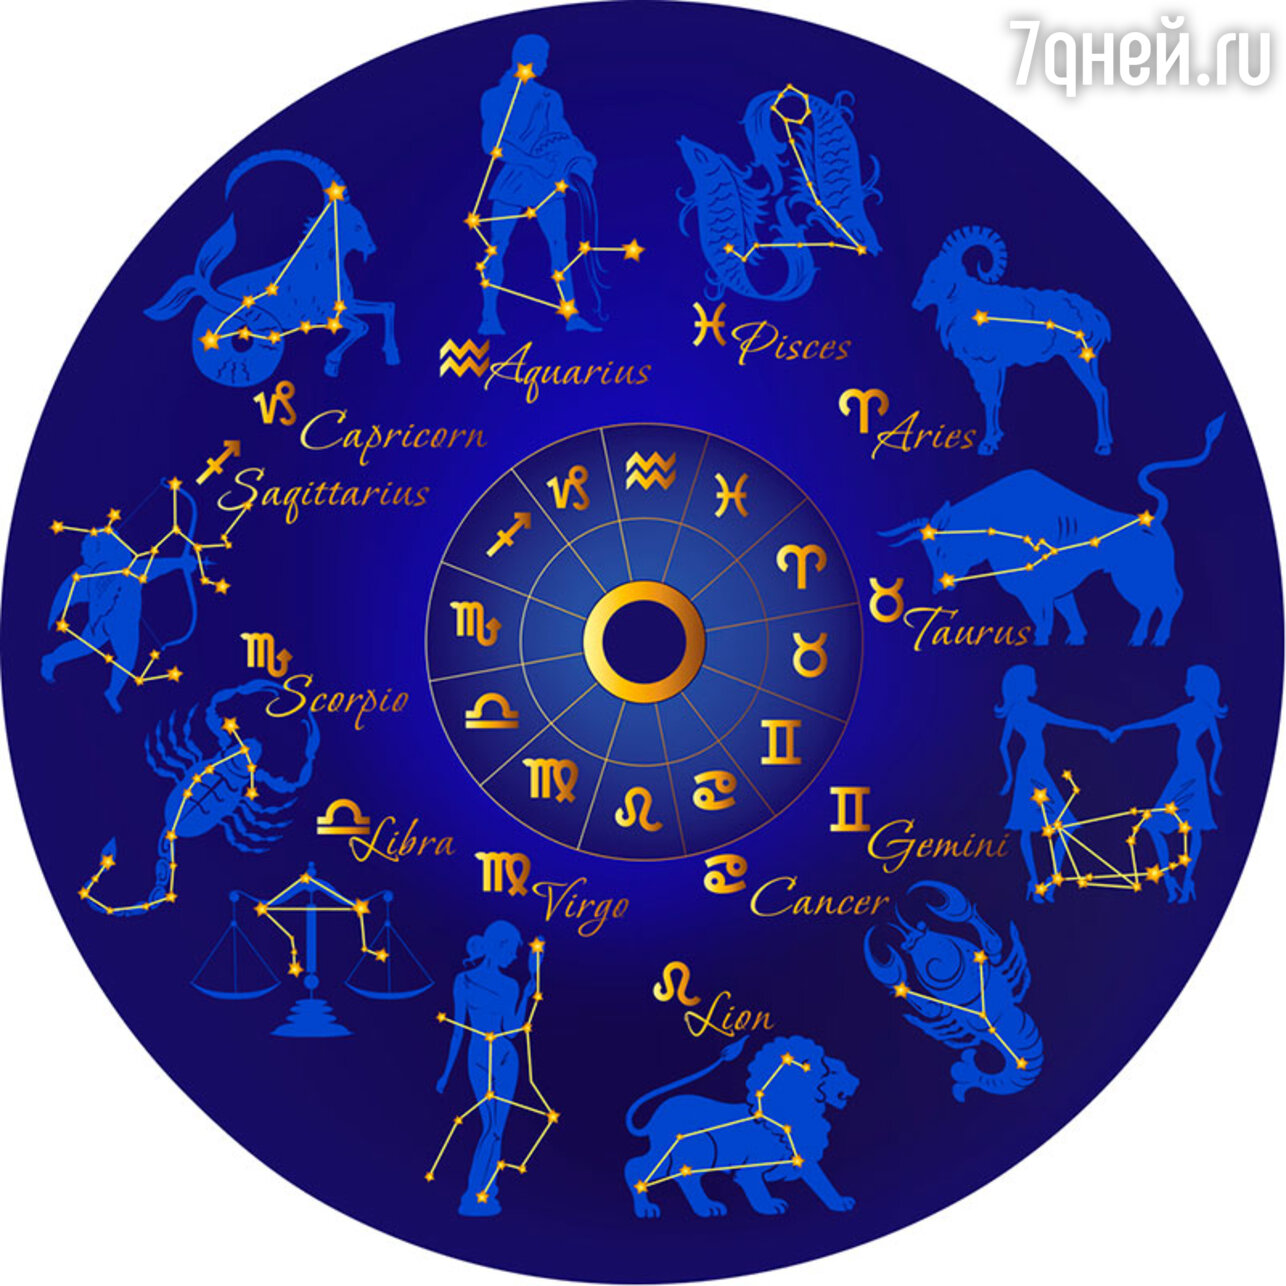 Знаки зодиака на русском. Созвездия знаков зодиака. Карта зодиакальных созвездий. Знаки зодикак. Зодиакальные созвездия символы.